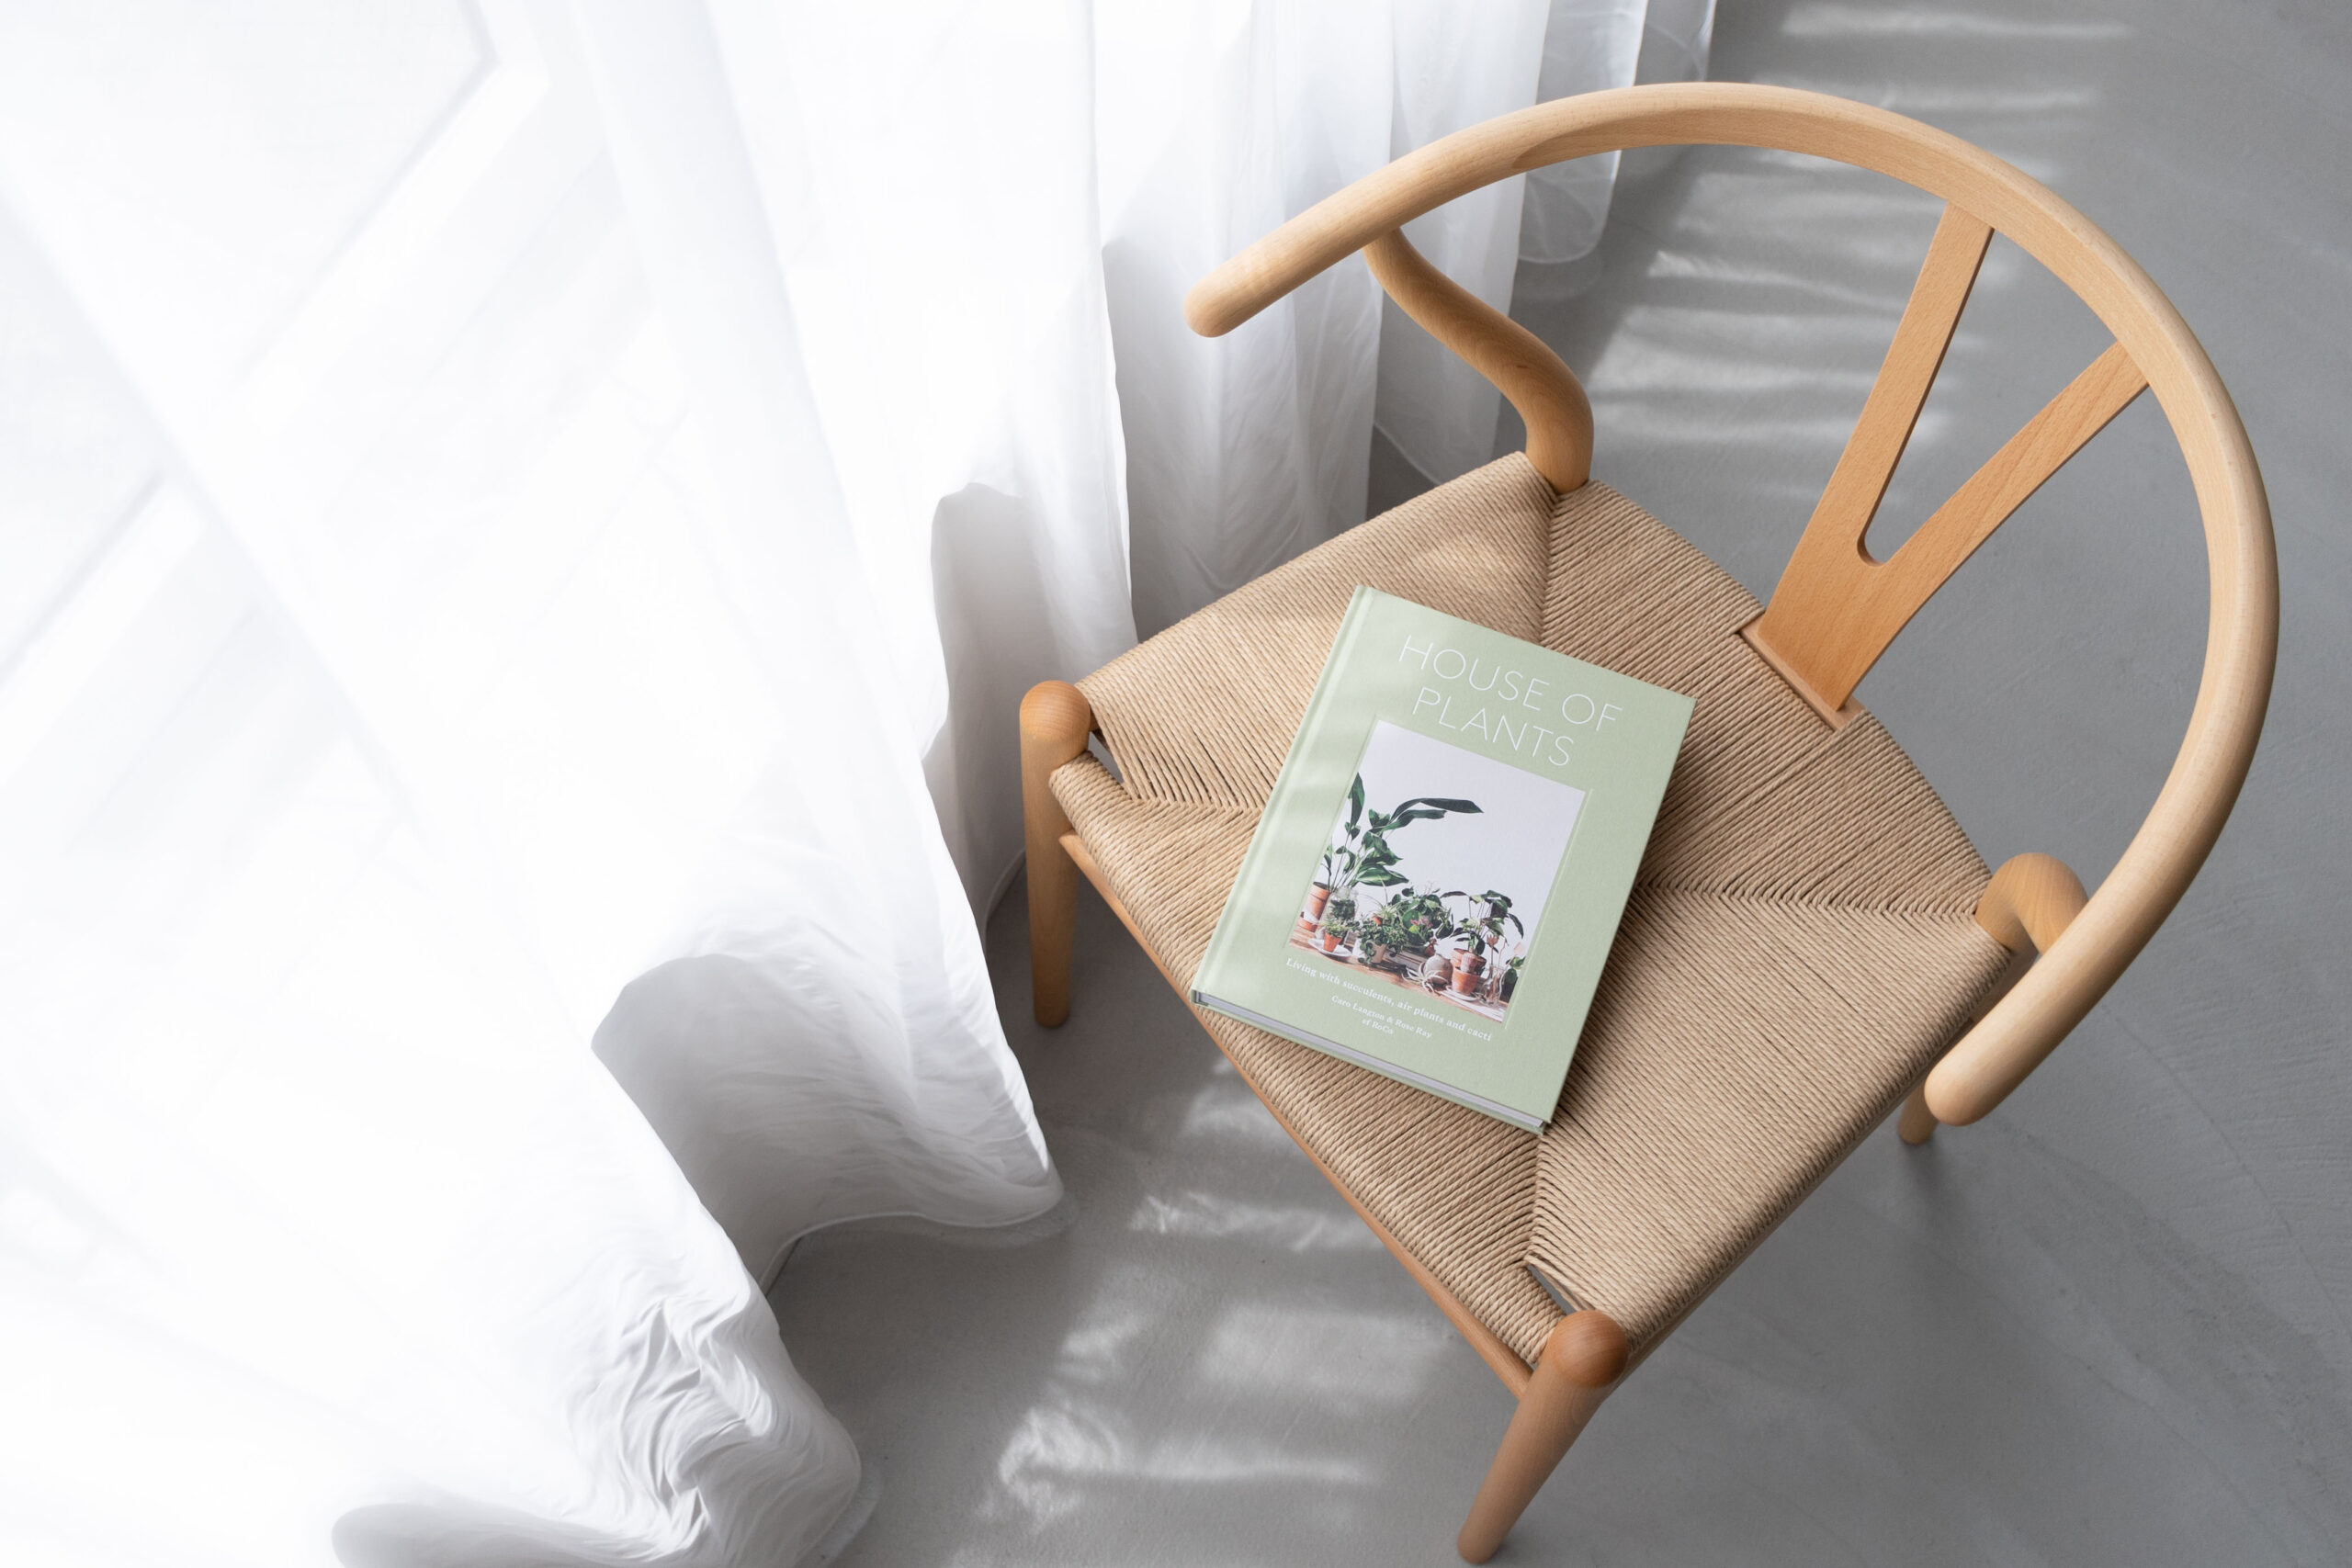 自然光で照らされたカーテンの横に、洋書を置いた椅子がある写真